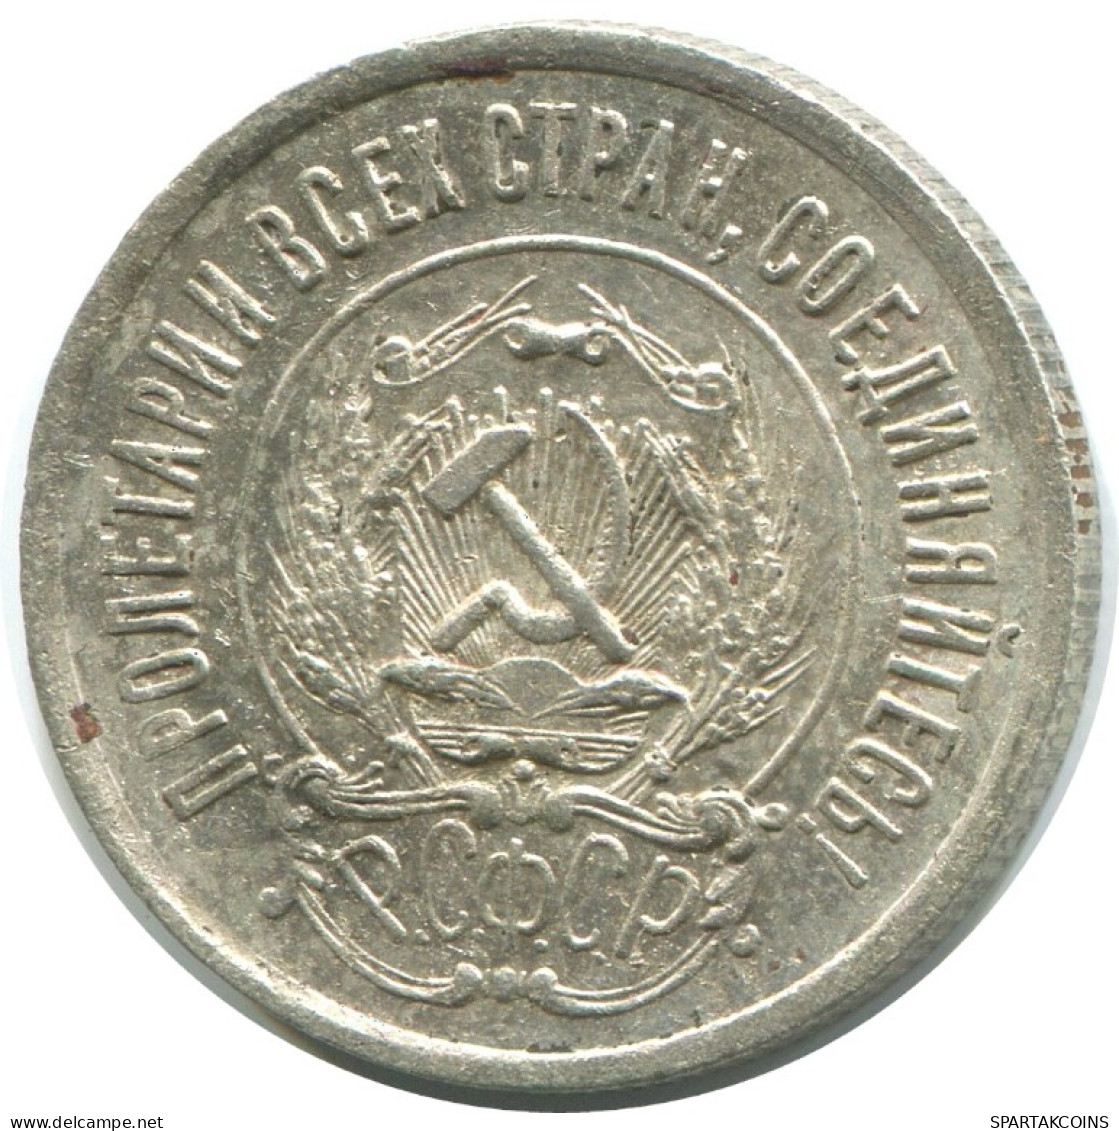 20 KOPEKS 1923 RUSSIA RSFSR SILVER Coin HIGH GRADE #AF407.4.U.A - Rusland